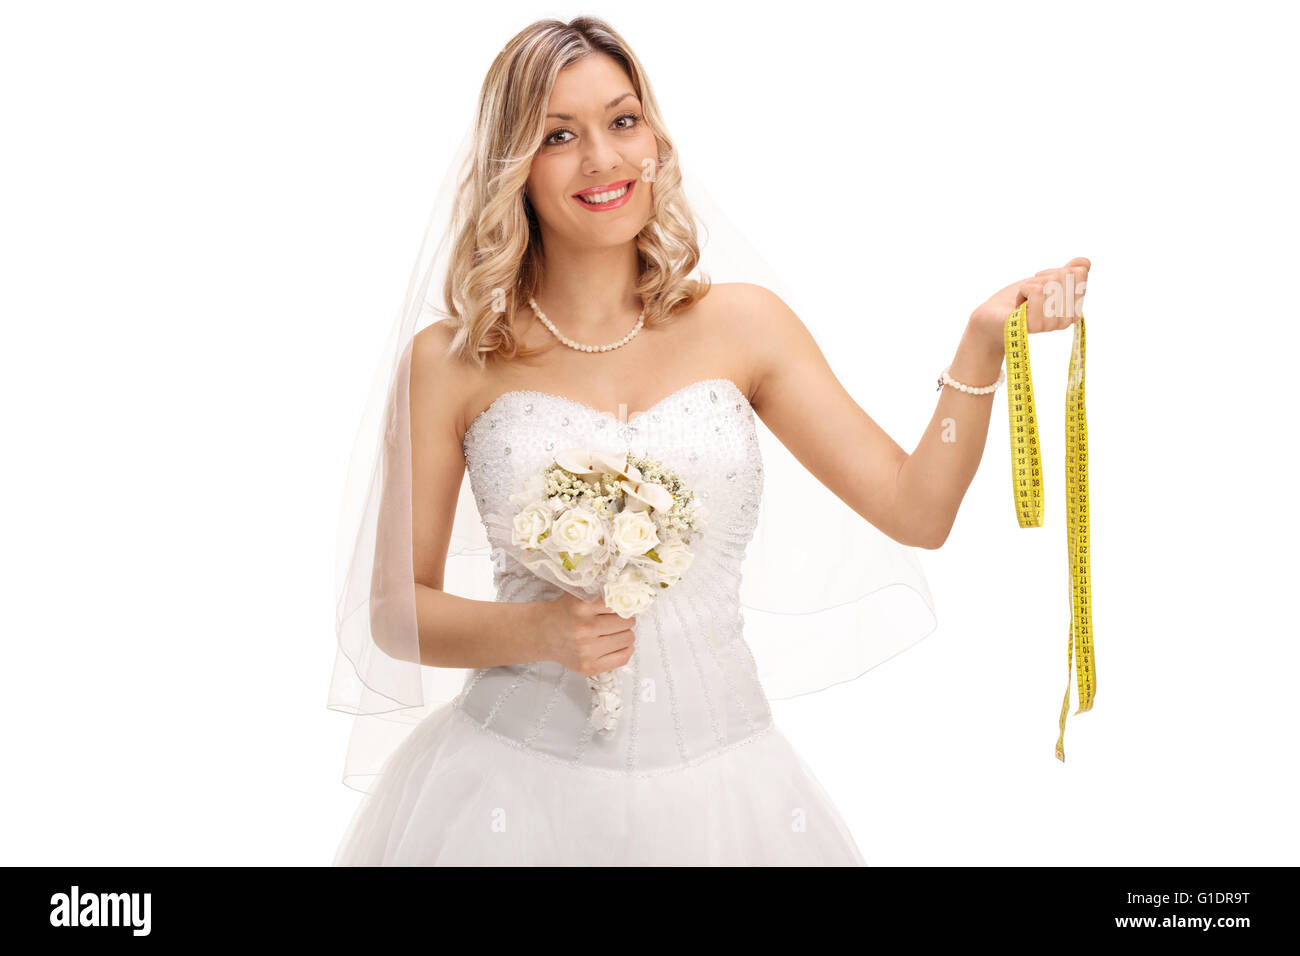 Cheerful young bride dans une robe de mariée blanche avec une bande de mesure isolé sur fond blanc Banque D'Images